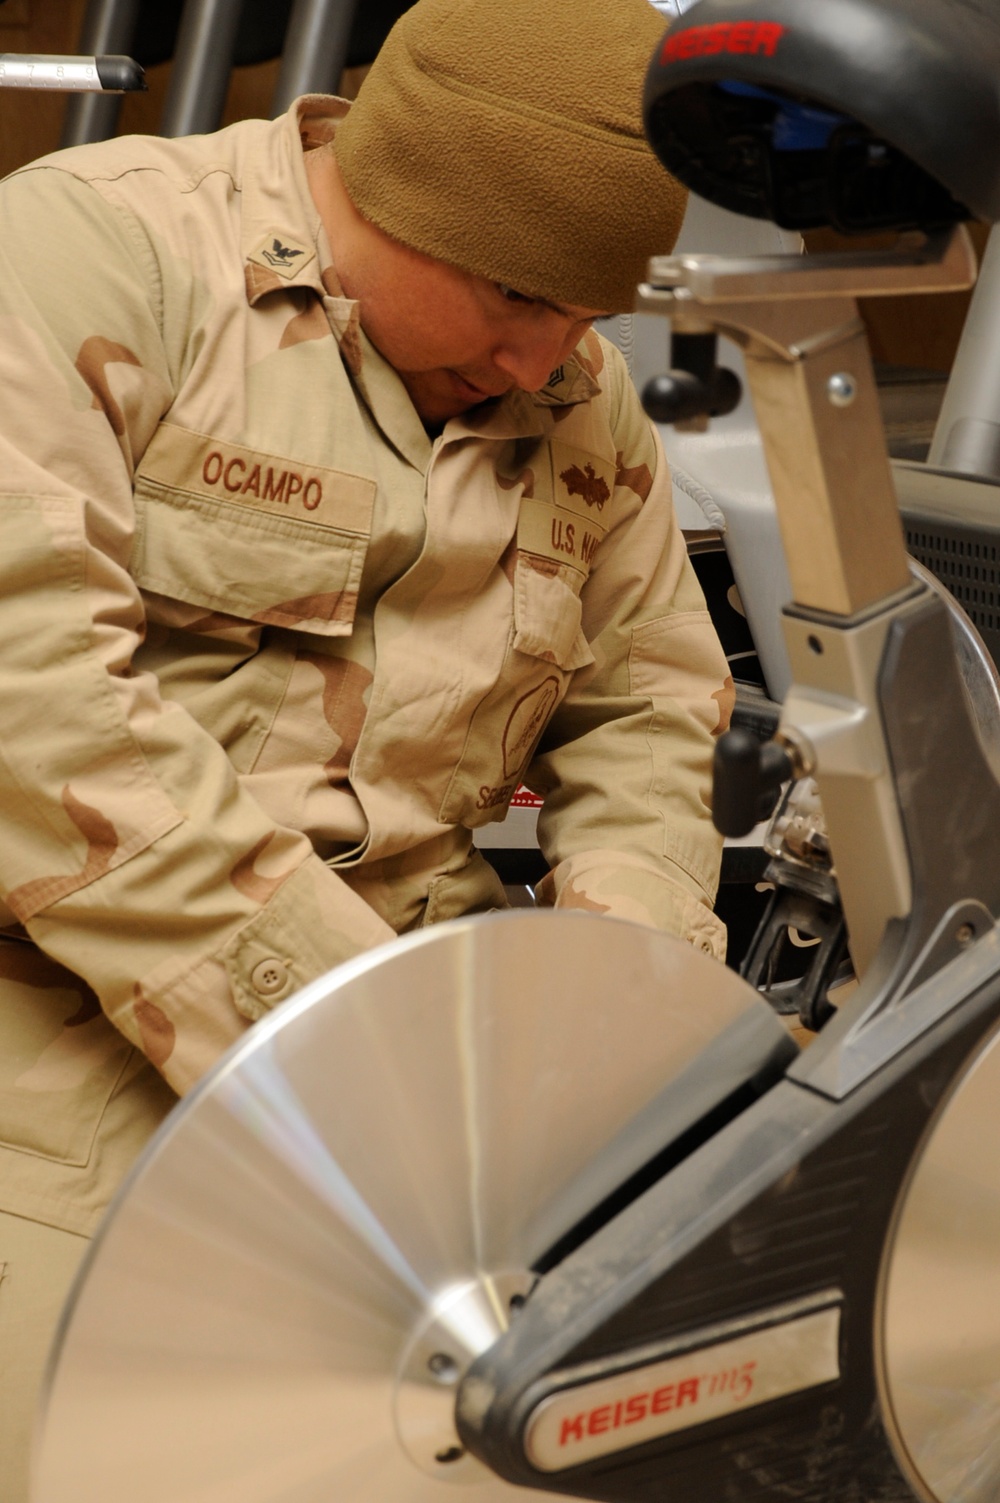 Seabee Repairs Gym Equipment in Afghanistan